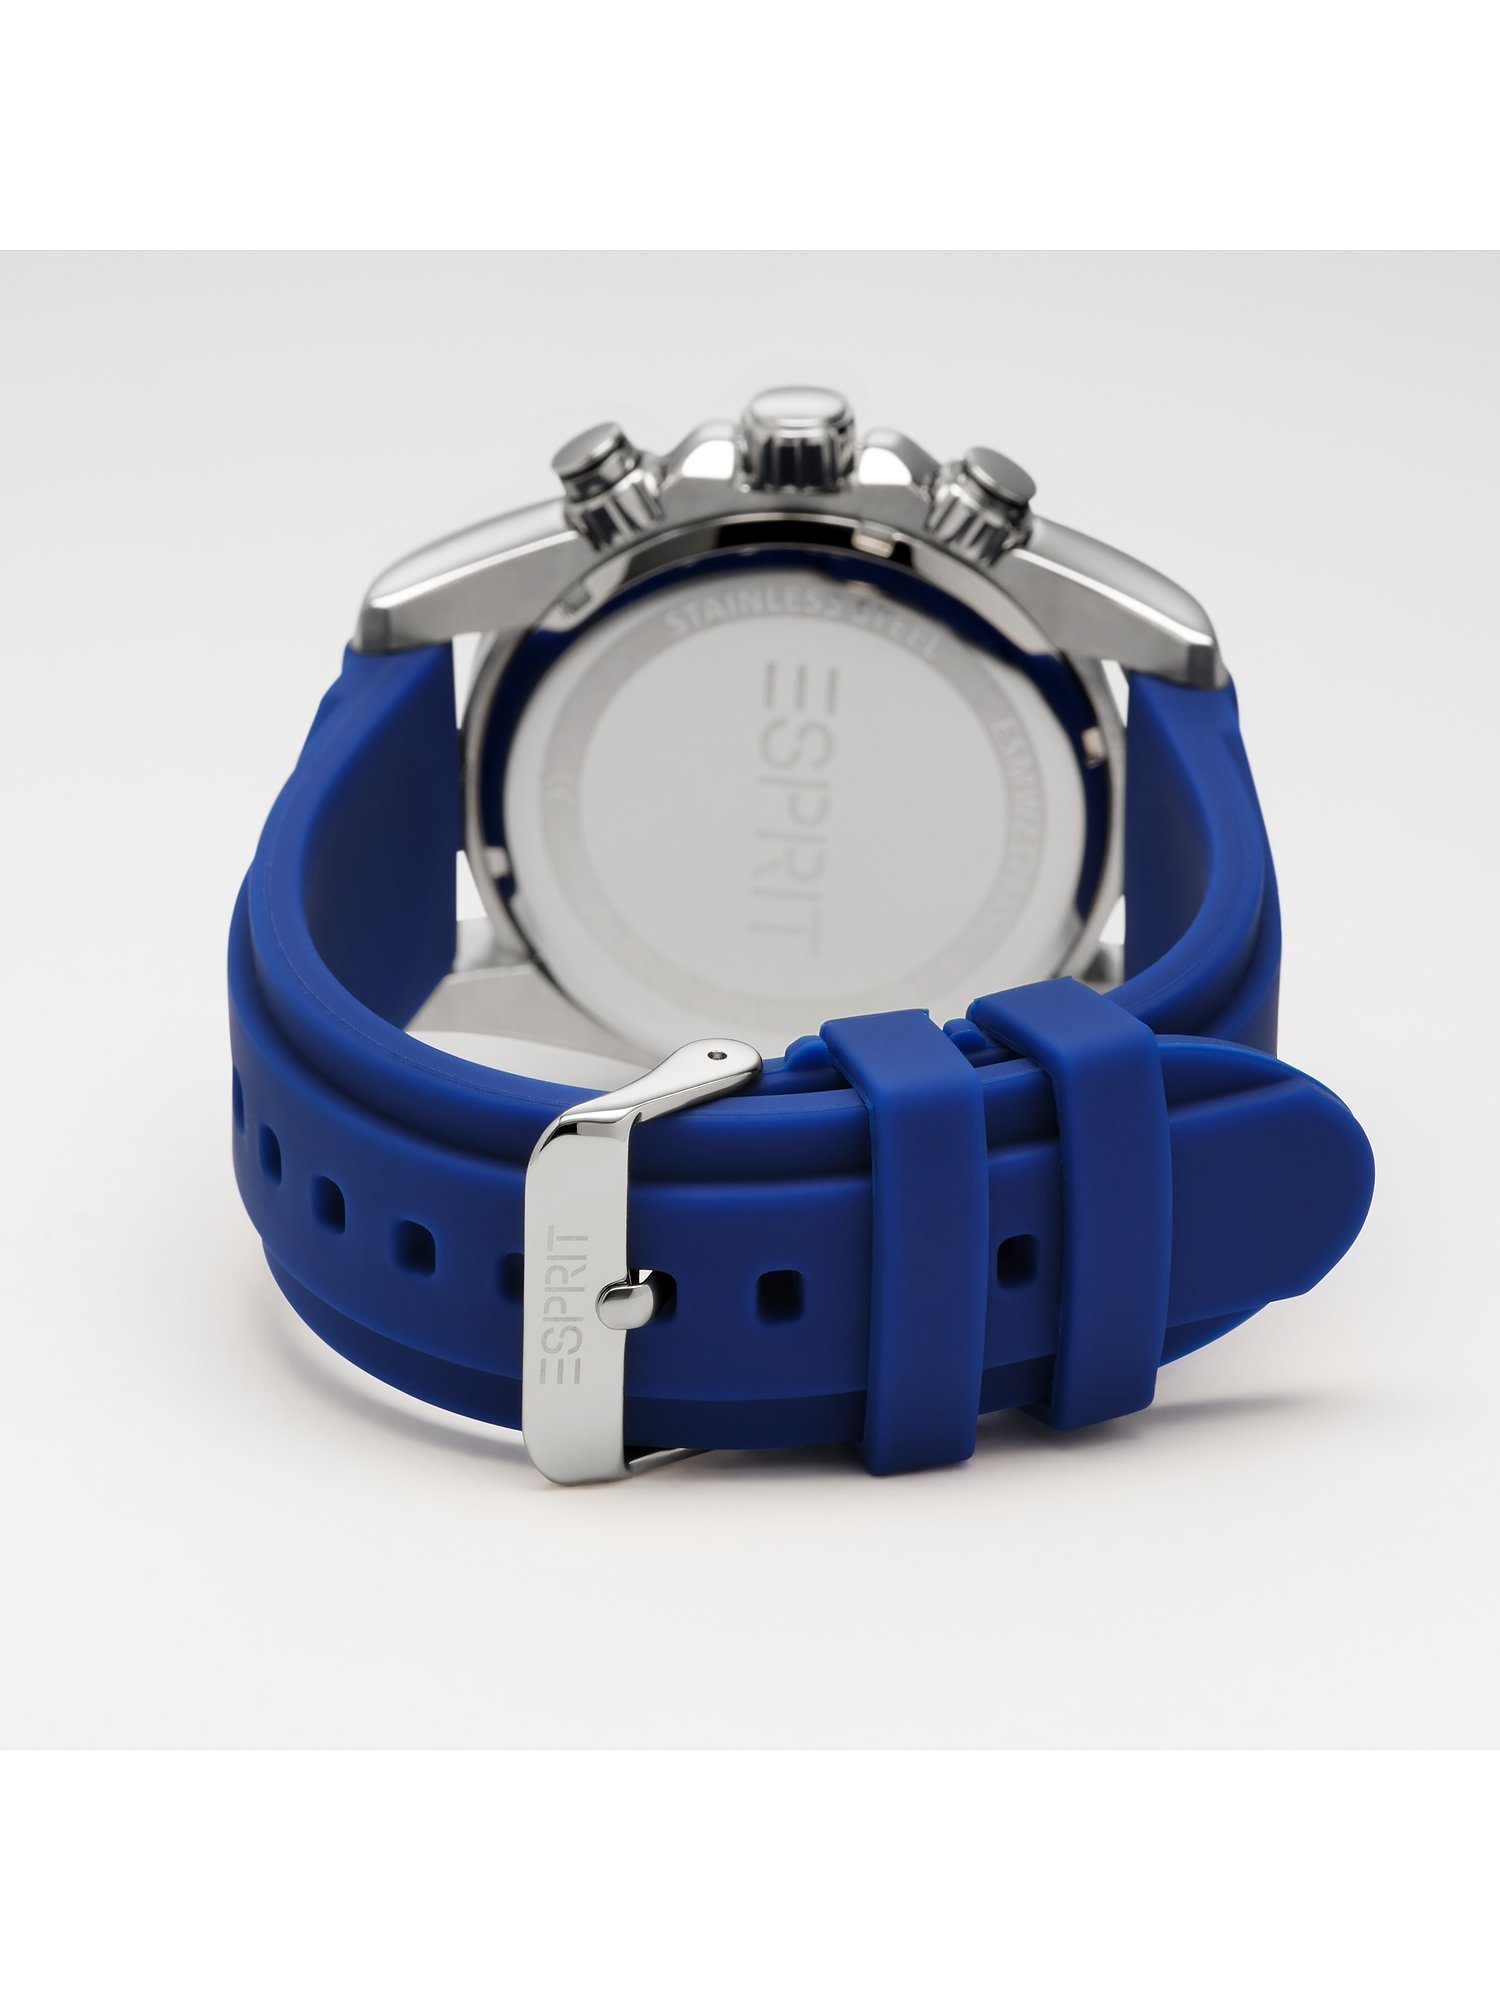 ESPRIT Herren-Uhren Quarz, Quarzuhr blau Klassikuhr Esprit Analog